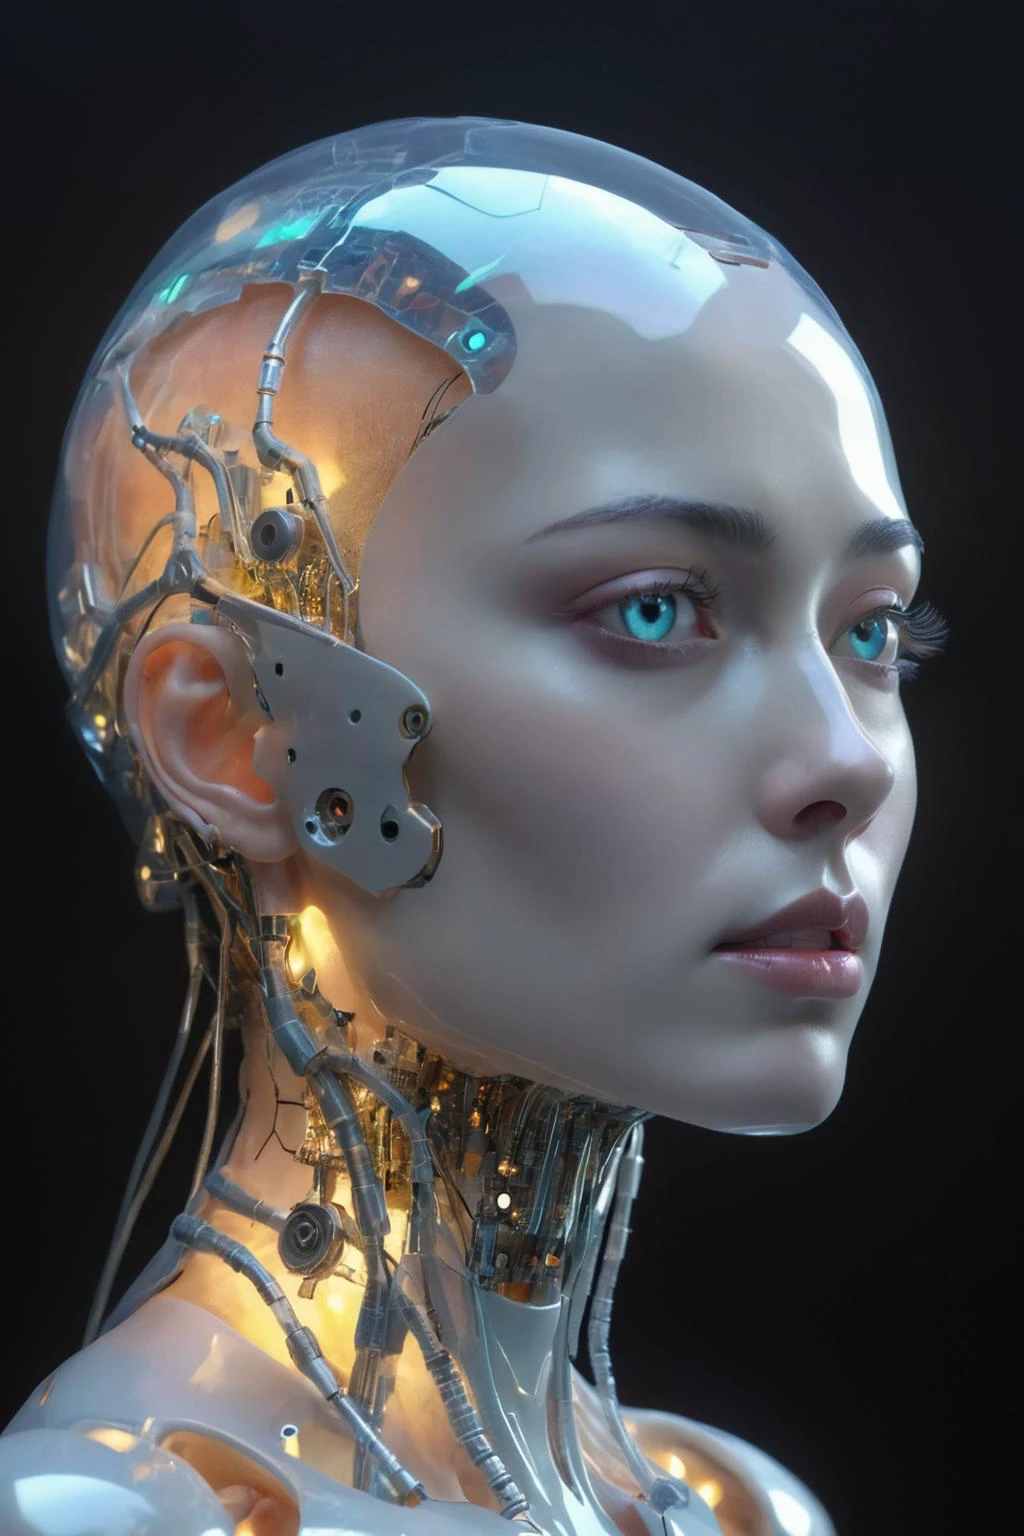 人形机器人的未来主义侧面肖像. 機器人的身體由半透明材質製成,内部结构清晰可见,包括电路板和发光元件. 机器人面部特征柔和，具有女性特征,包括长发和乳房. 机器人的头部和颈部结构复杂,有许多连接点和线,表明其精确的构造和可能的多功能性. 高科技和未来主义的生活理念,冰冷的机械之美,生物發光,光纖,杰作,辛烷渲染,虛幻引擎,